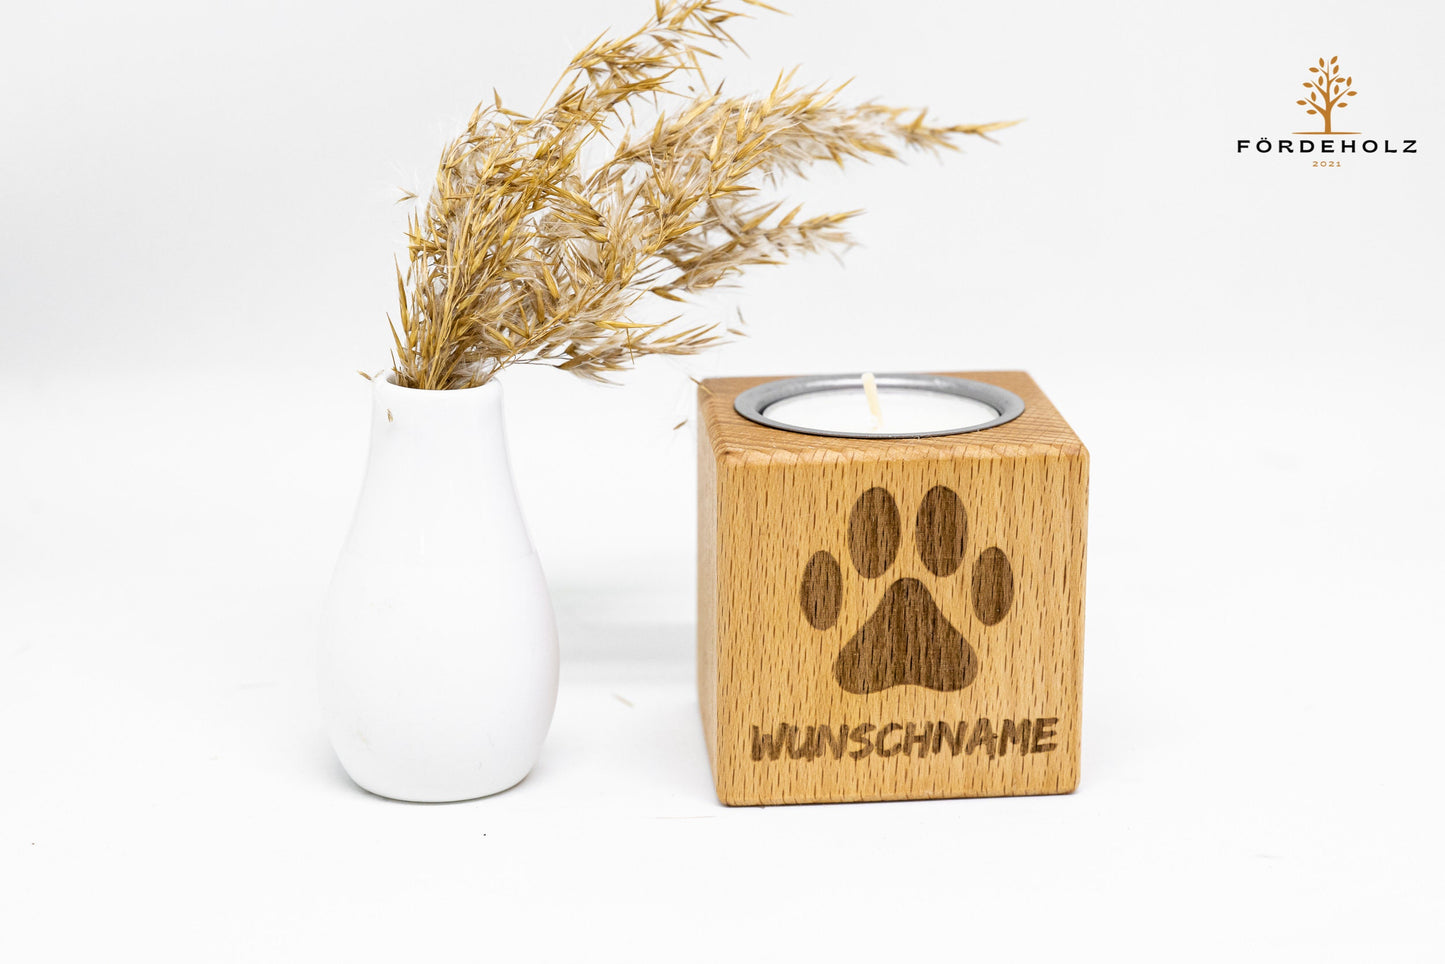 Trauerlicht Hund - Teelichthalter aus Buchenholz • mit Wunschgravur • Gedenkkerze • Trauerlicht Haustier Hund Katze • Windlicht • Teelicht